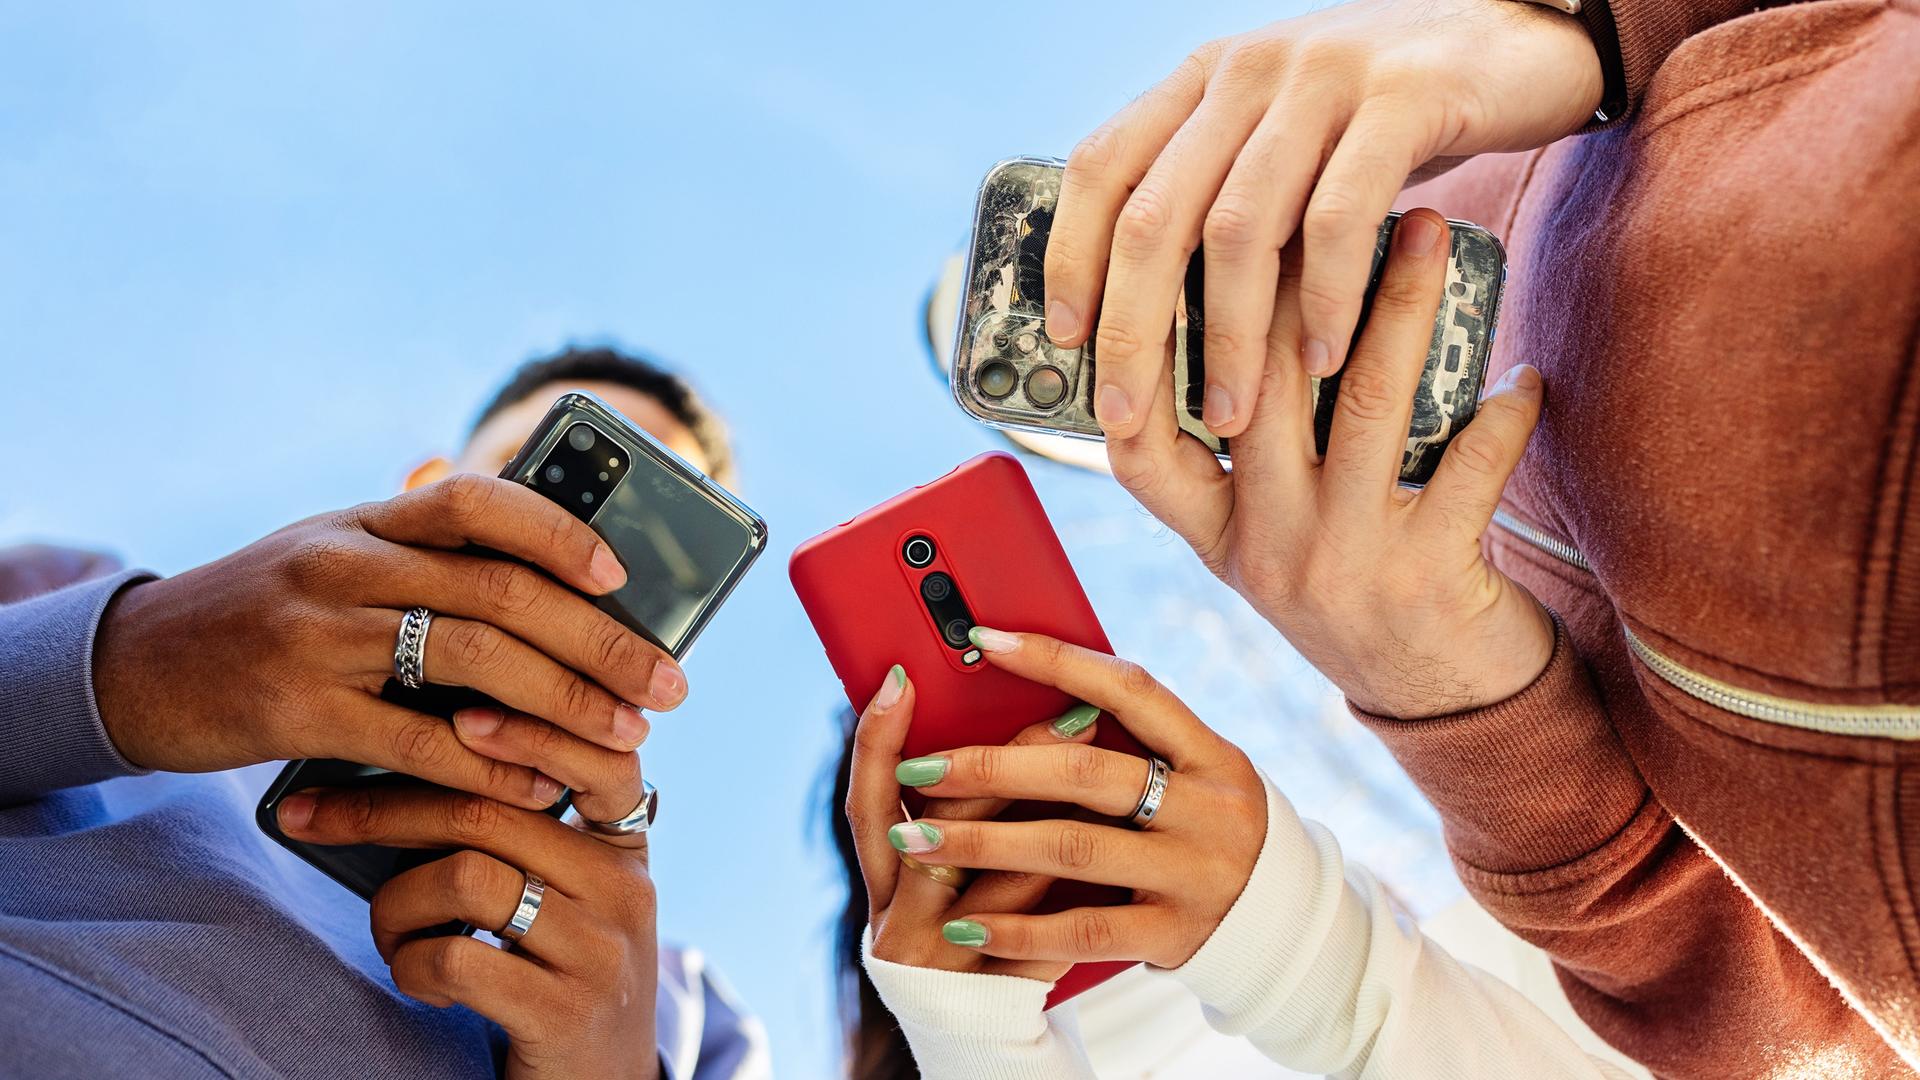 Drei Menschen schauen auf ihre Smartphones, aus der Perspektive von unten betrachtet.